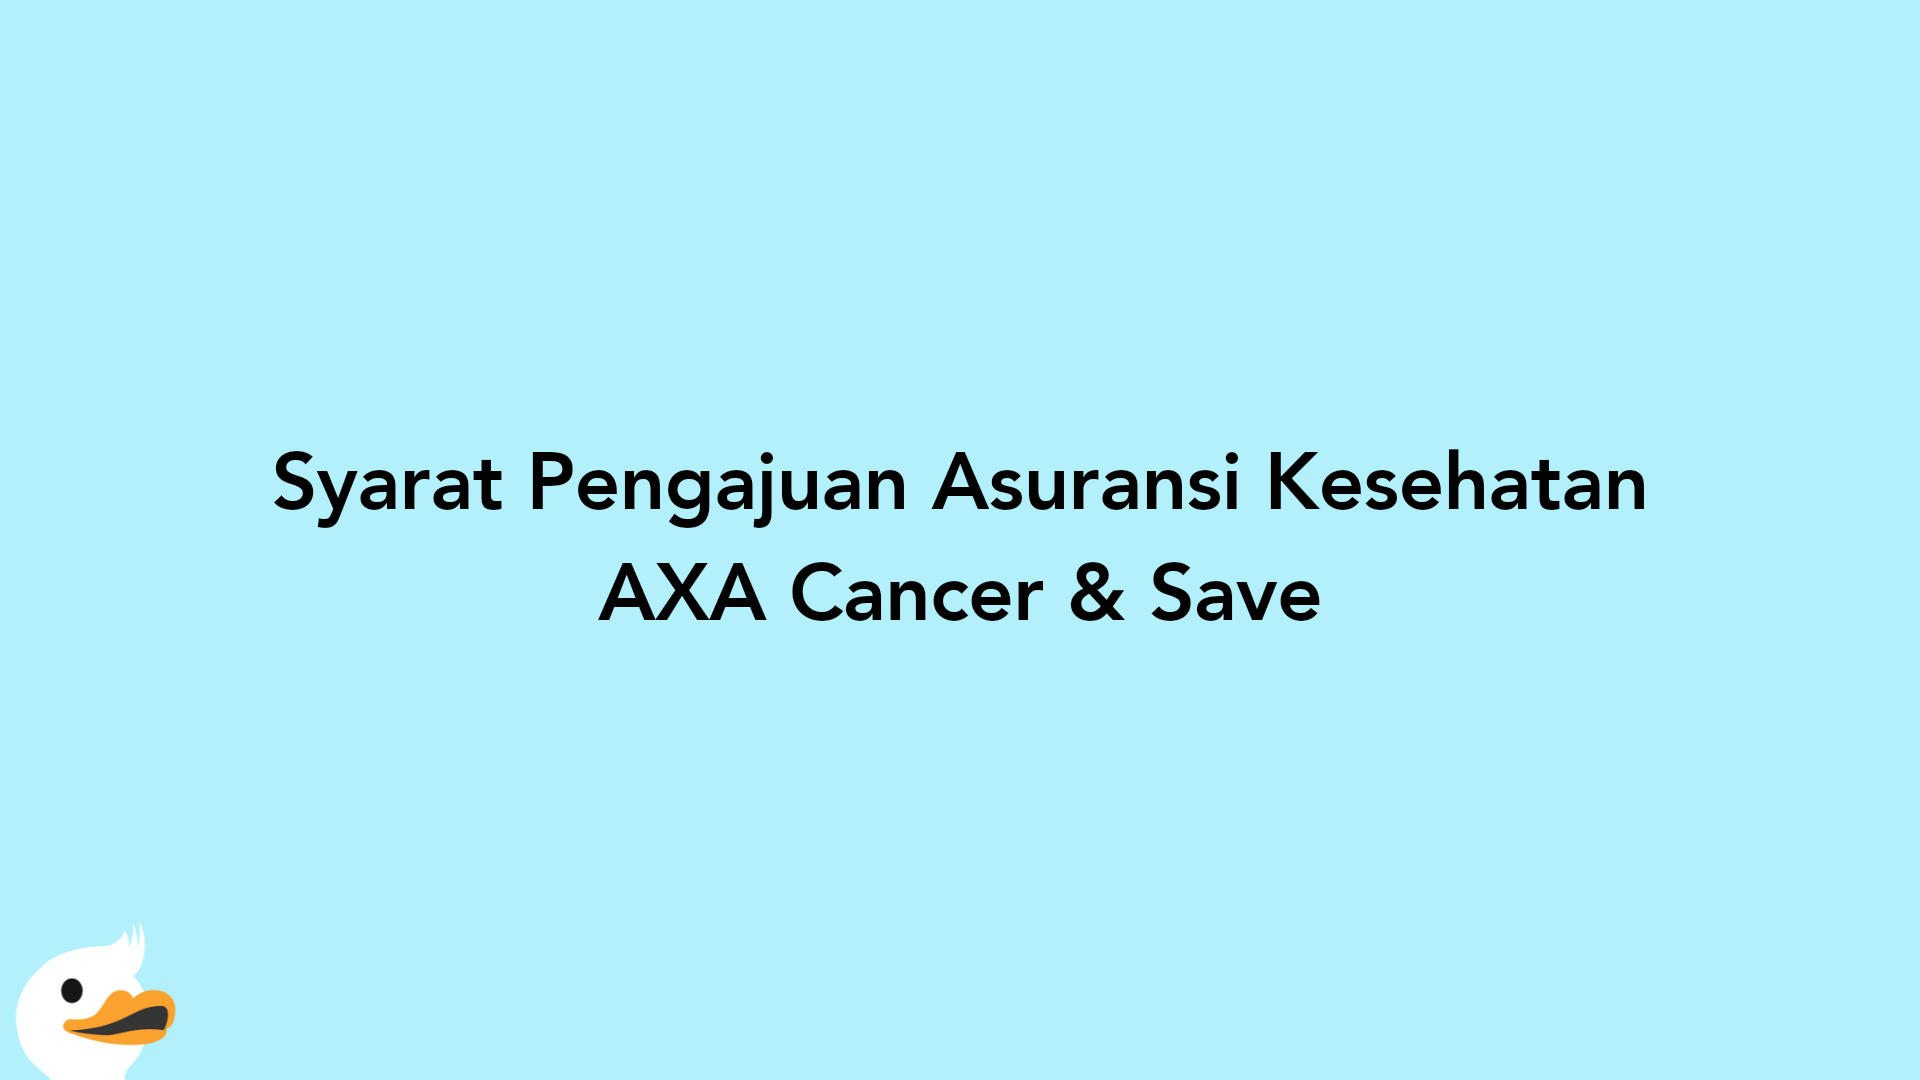 Syarat Pengajuan Asuransi Kesehatan AXA Cancer & Save